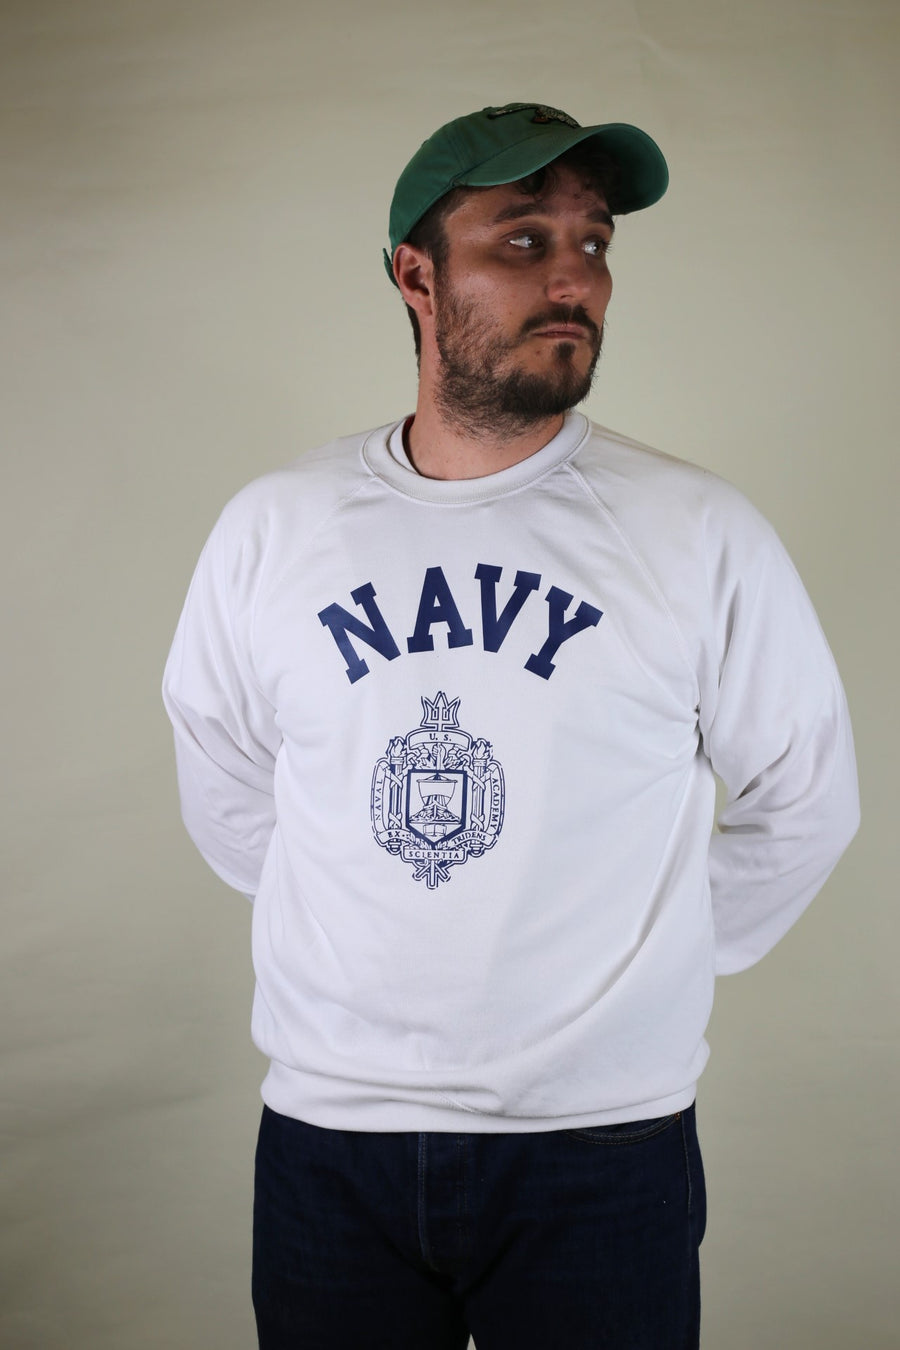 Us Navy Academy raglan sweatshirt